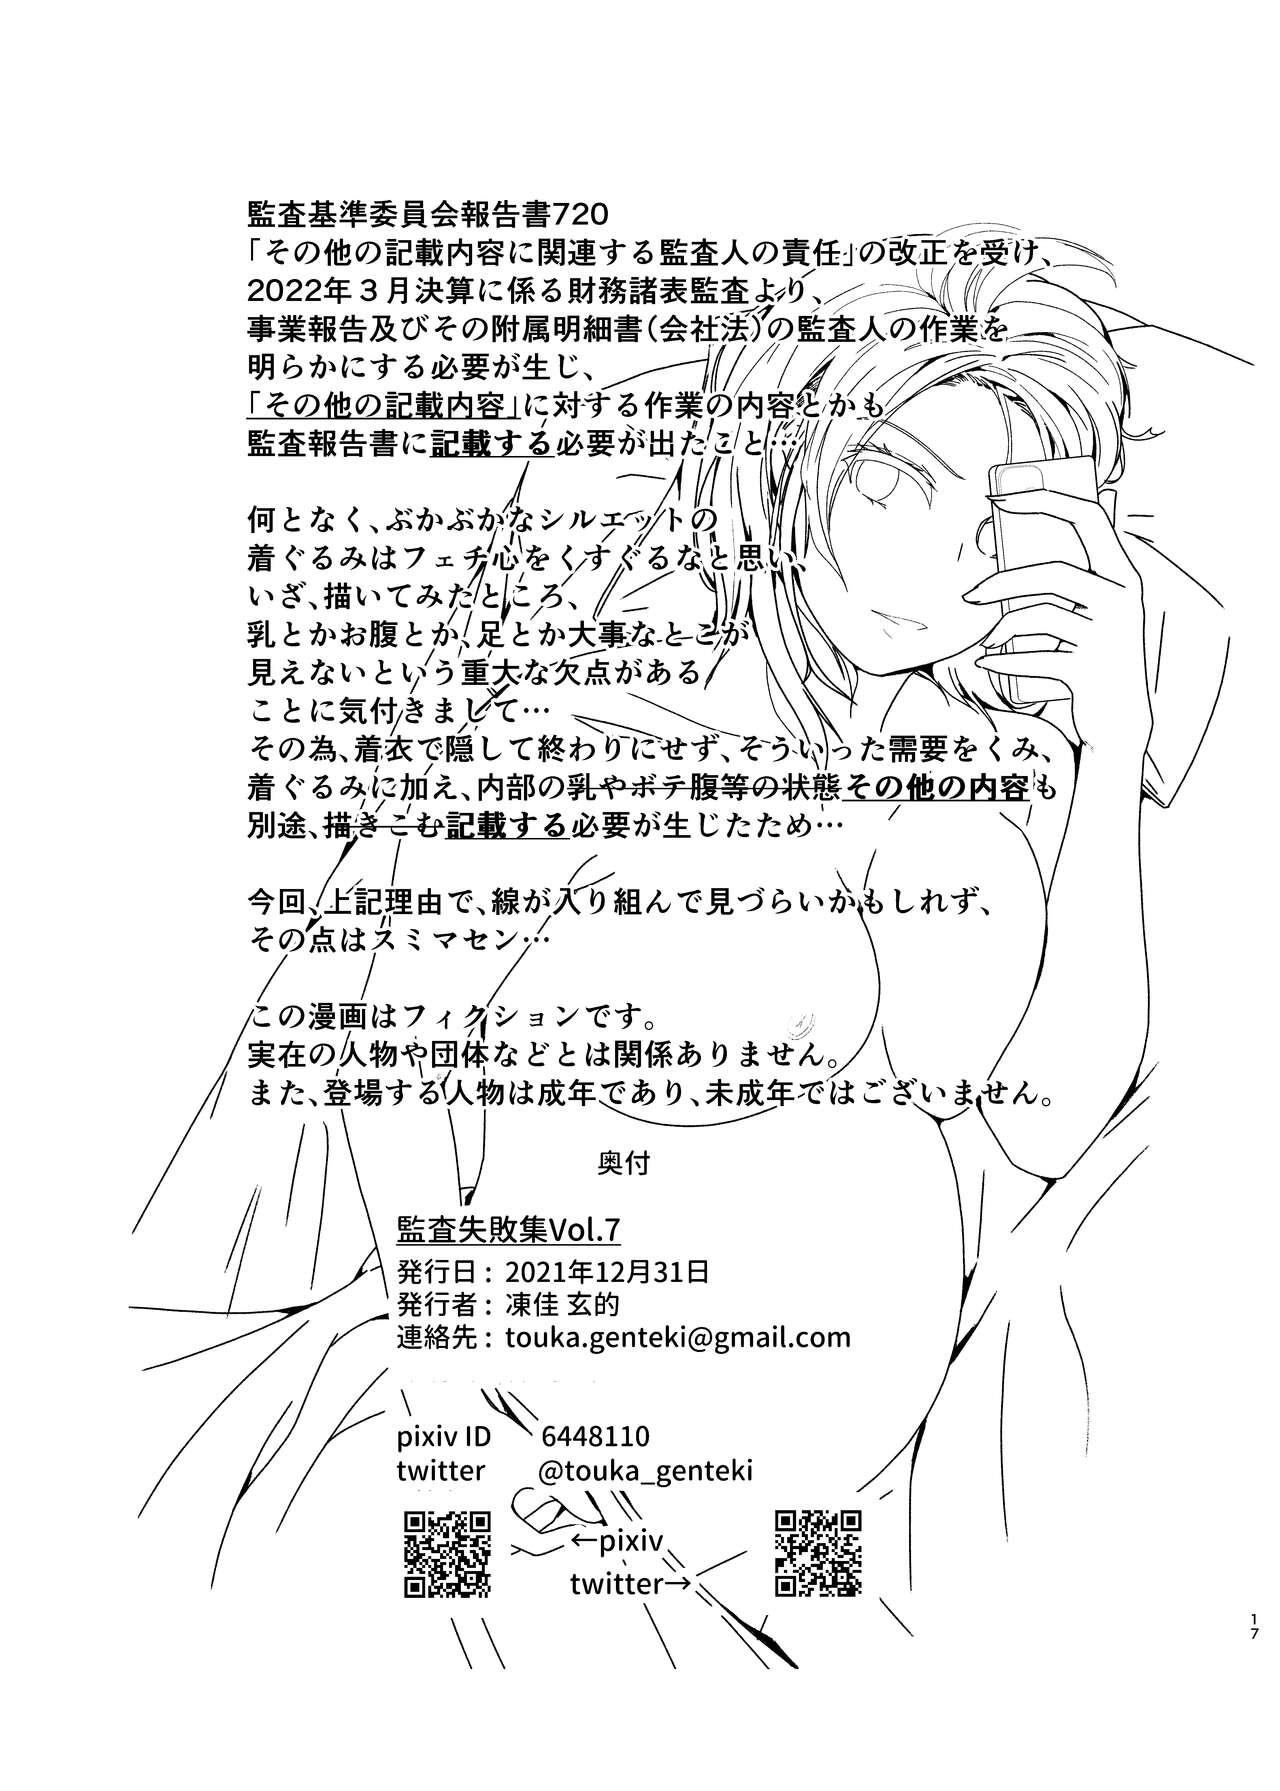 [Touka Genteki] Kansatsu Shippai Shuu Vol. 7 ~Sonota Kisai Naiyou Hen~ - Audit Failure Cases [Digital] 14